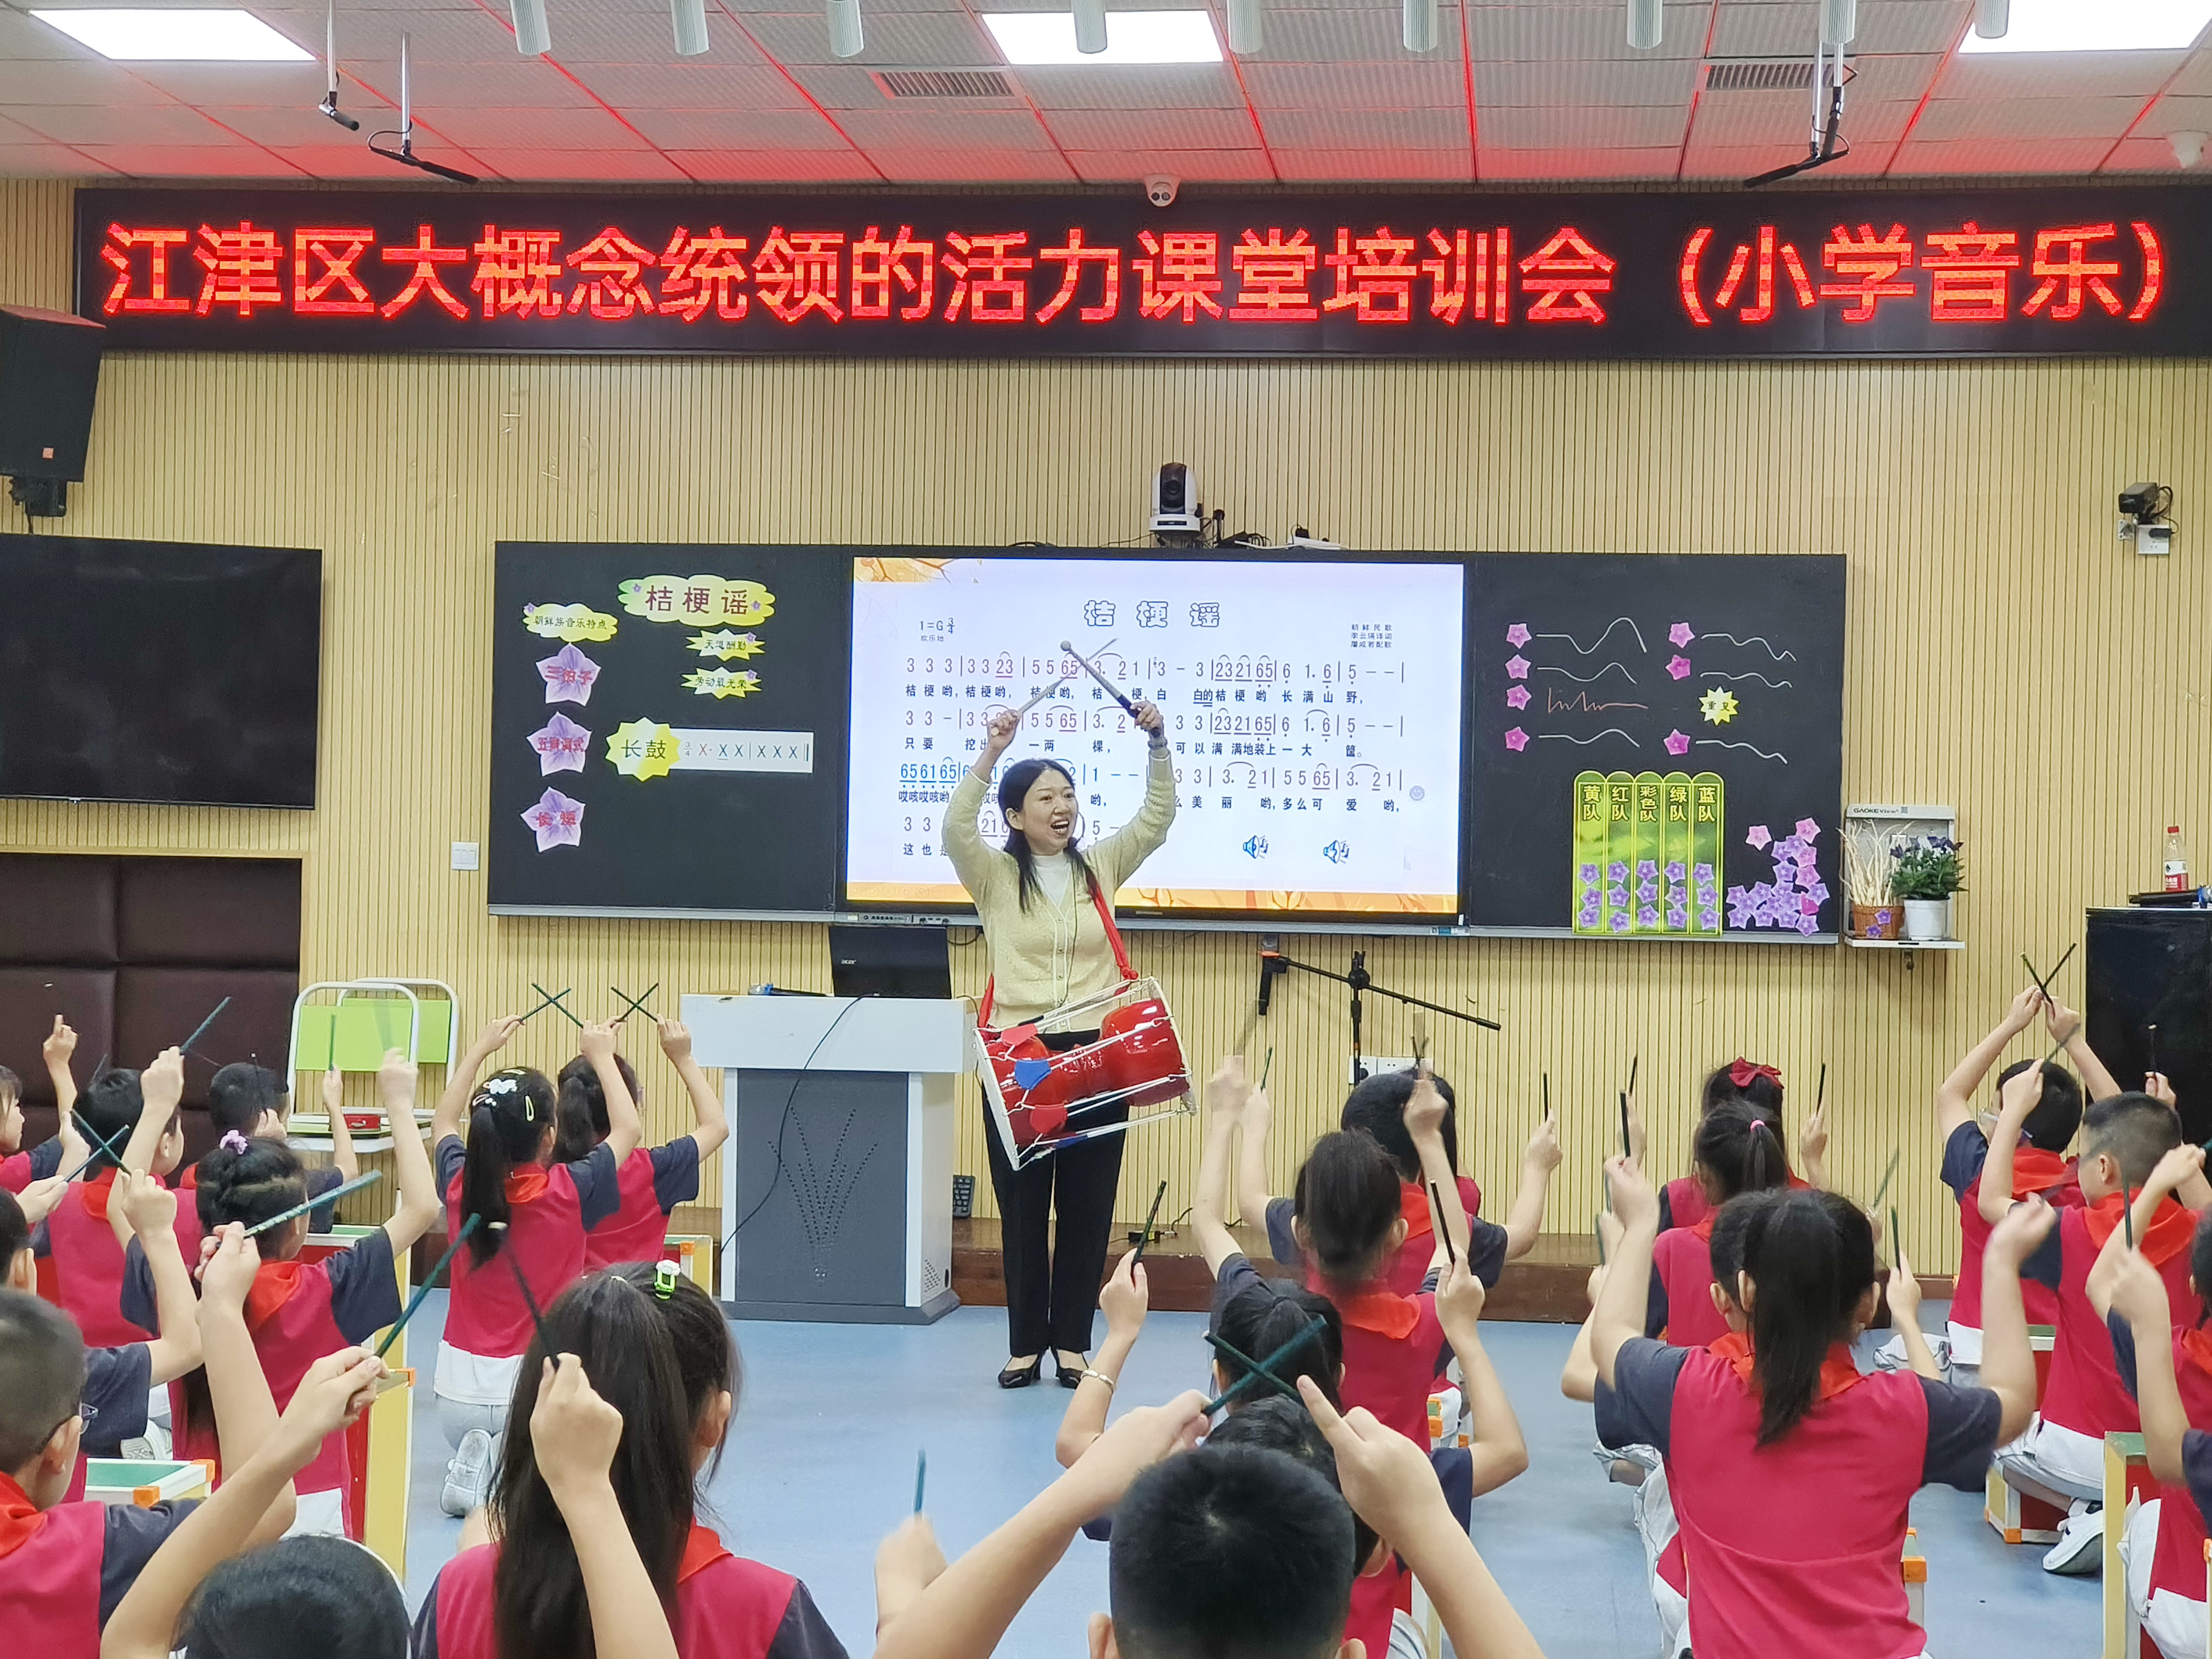 江津区开展“大概念统领的活力课堂”小学音乐集中培训活动